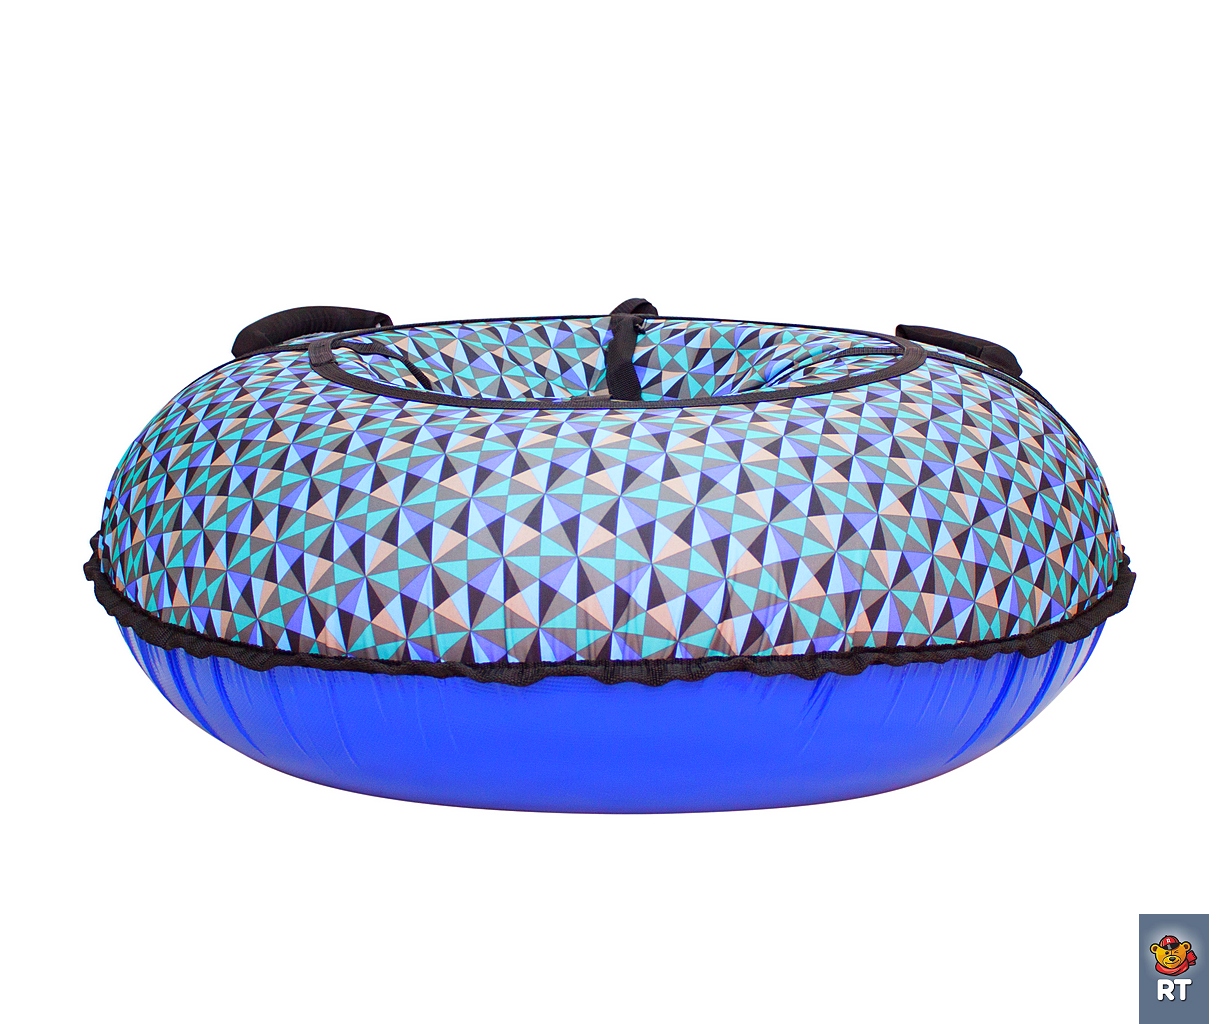 Санки надувные тюбинг дизайн - Разноцветные треугольники, диаметр 105 см.  